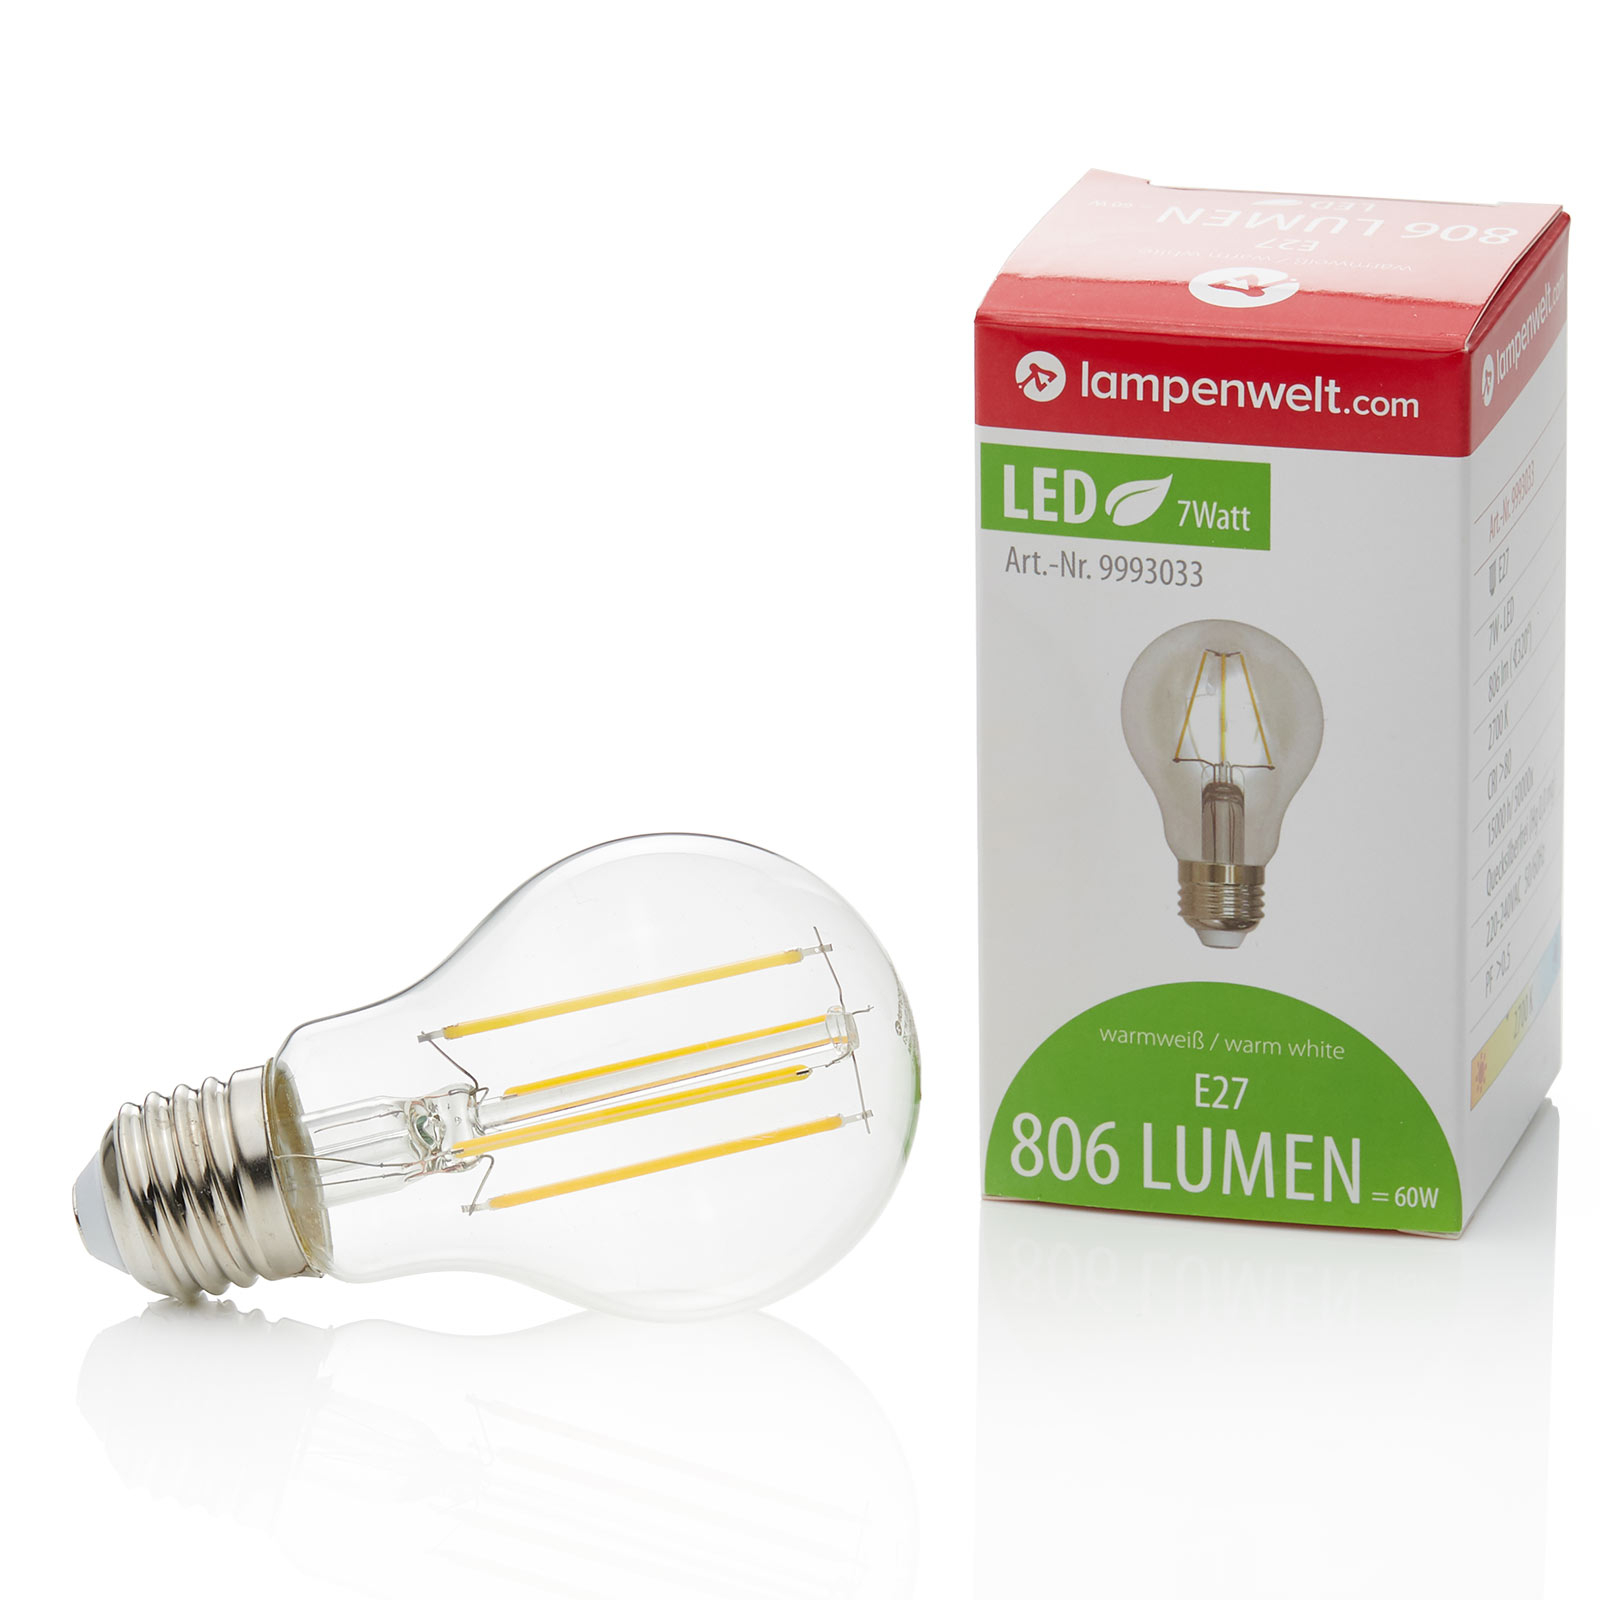 E27 filament LED bulb 7 W, 806 lm, 2,700 K, clear